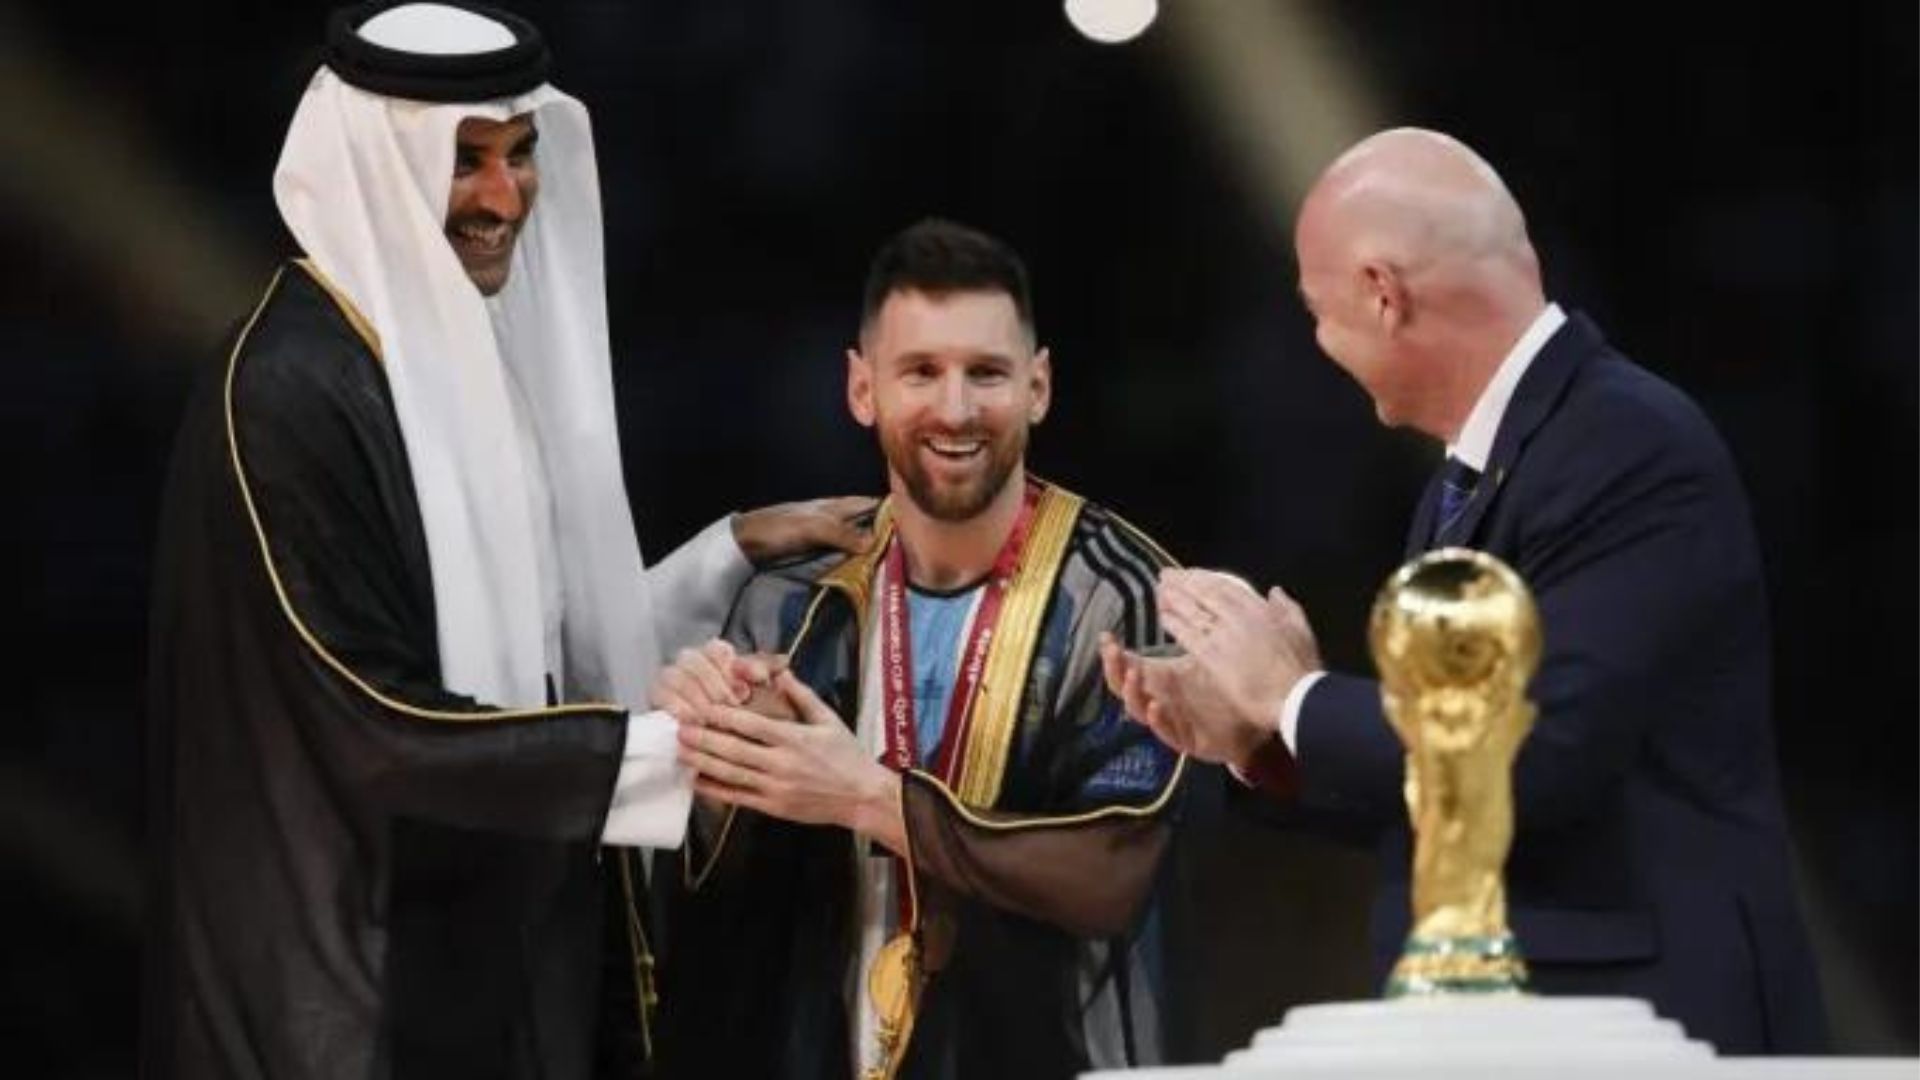 El padre de Lionel Messi fue visto en Riyadh para conversaciones de transferencia de Al-Hilal, el acuerdo podría superar el movimiento récord de Ronaldo